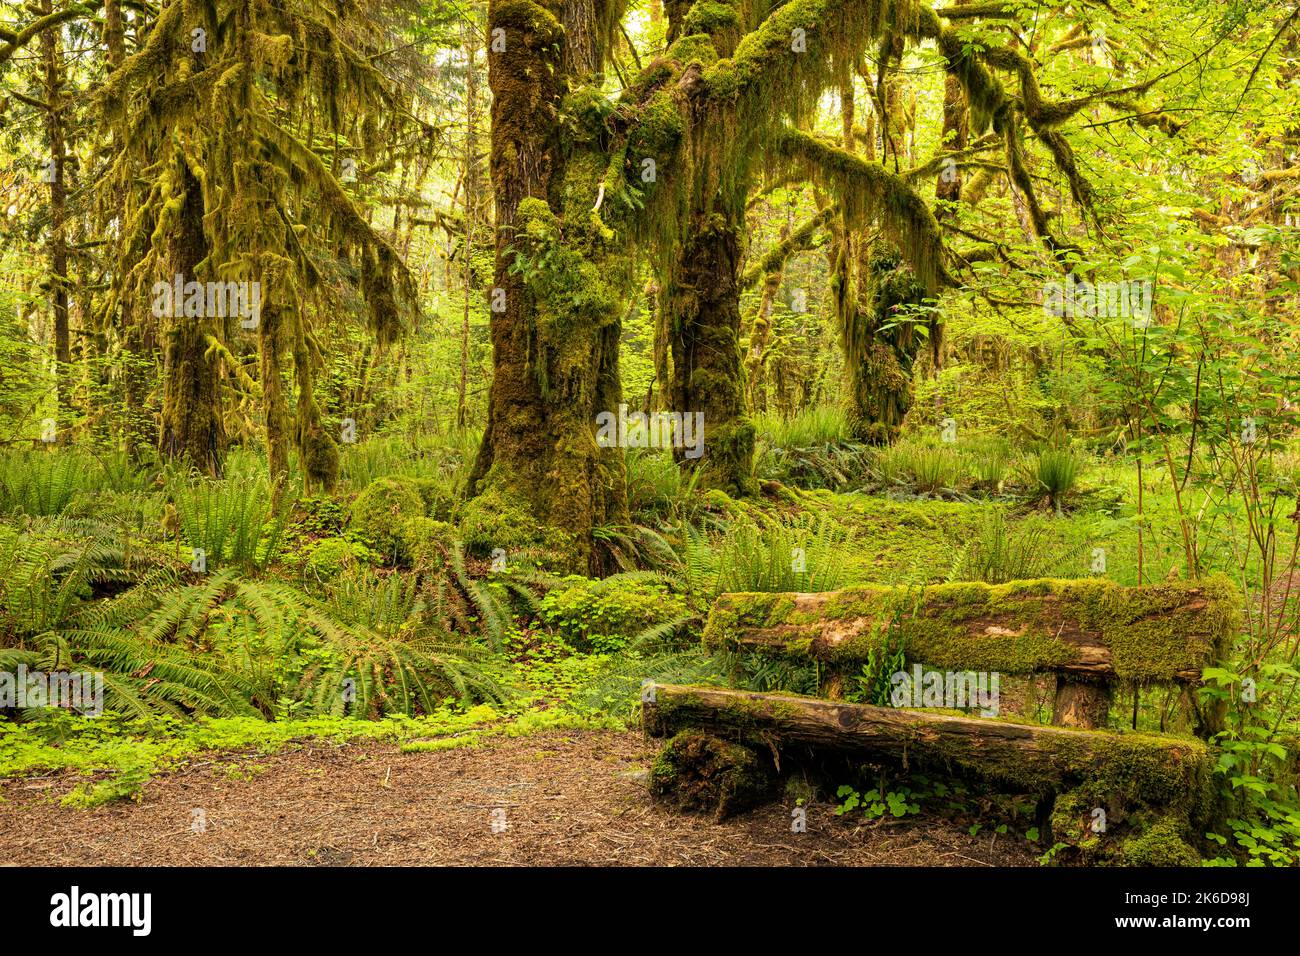 WA22262-00...WASHINGTON - alberi coperti di muschio e una panca coperta di muschio lungo il Maple Glade Nature Trail nella foresta pluviale di Quinault della Nazione Olimpica Foto Stock